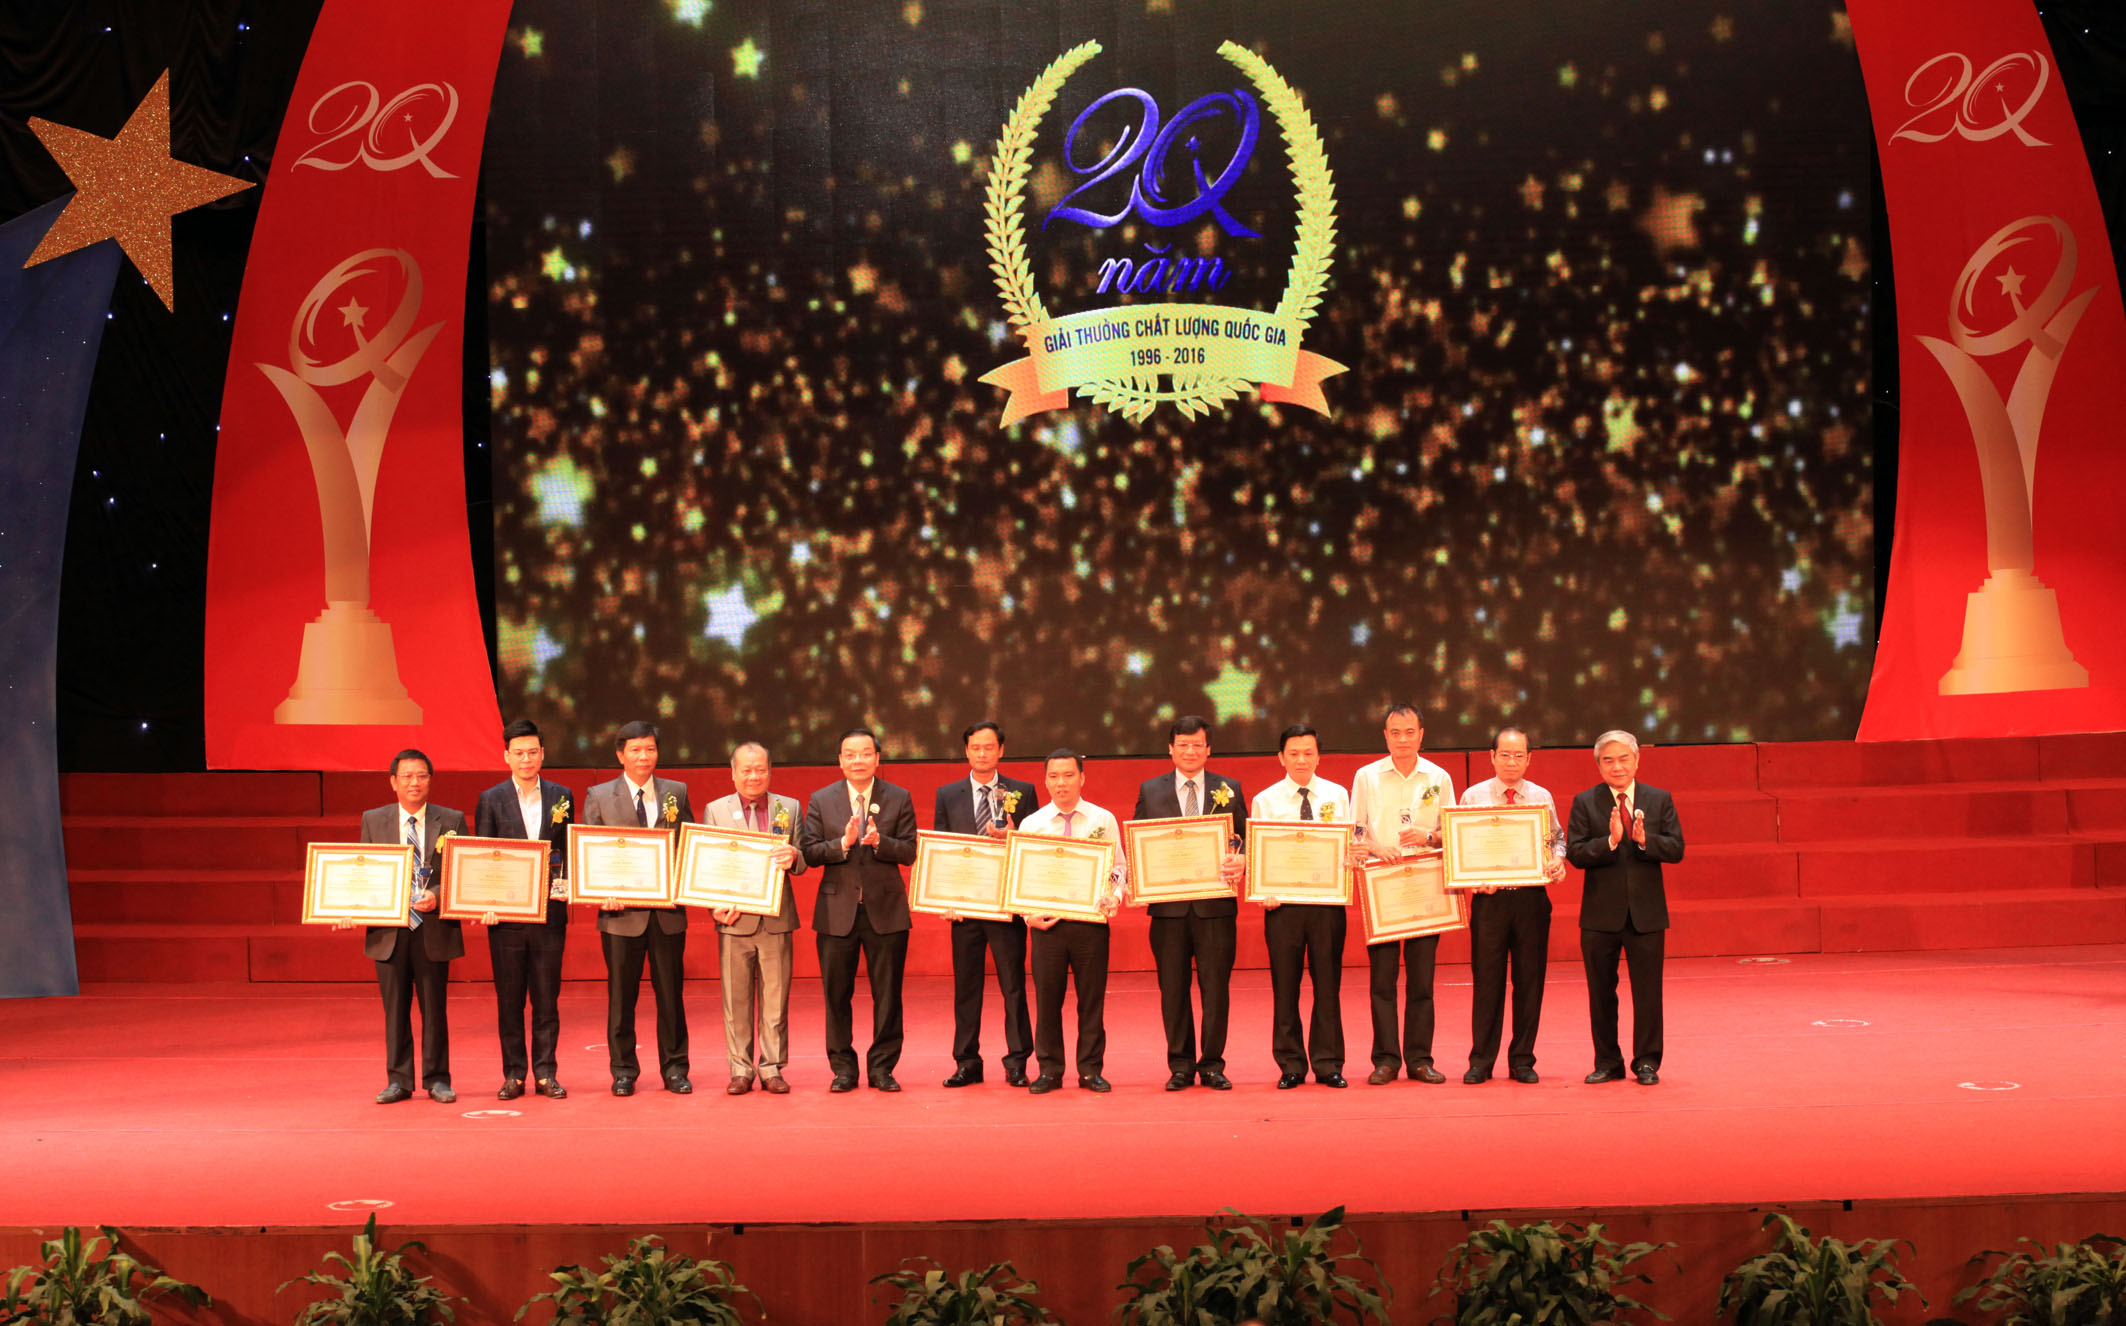  Lãnh đạo Bộ KH&CN trao Giải thưởng Chất lượng Quốc gia cho các doanh nghiệp. Ảnh: N. N